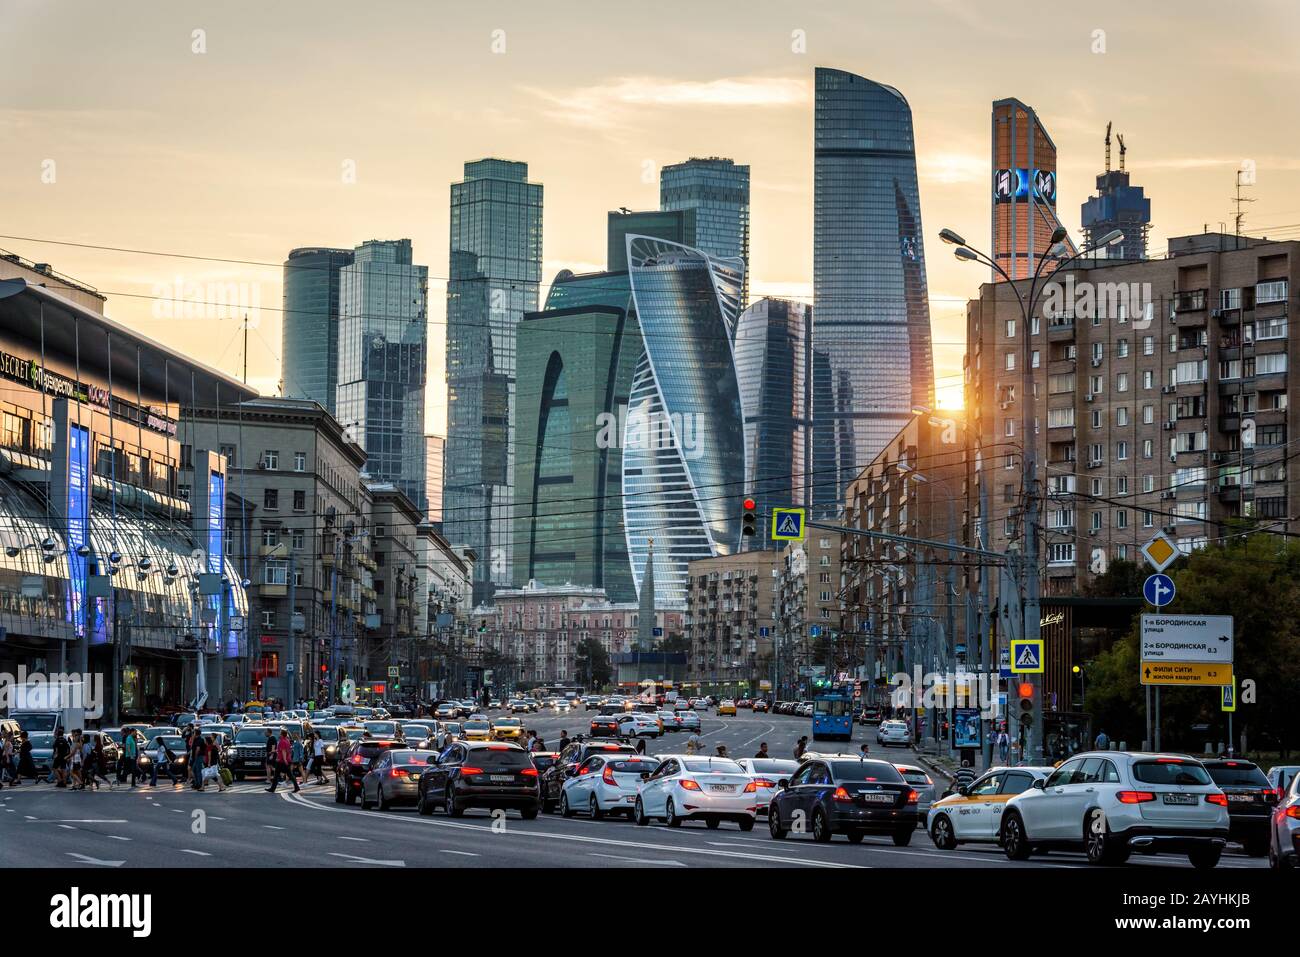 Moskau - 27. August 2018: Stadtbild Moskaus mit modernen Wolkenkratzern Moskau-Stadt, Russland. Blick auf die Straße mit Autos und städtischen Türmen im Sommerabend Stockfoto